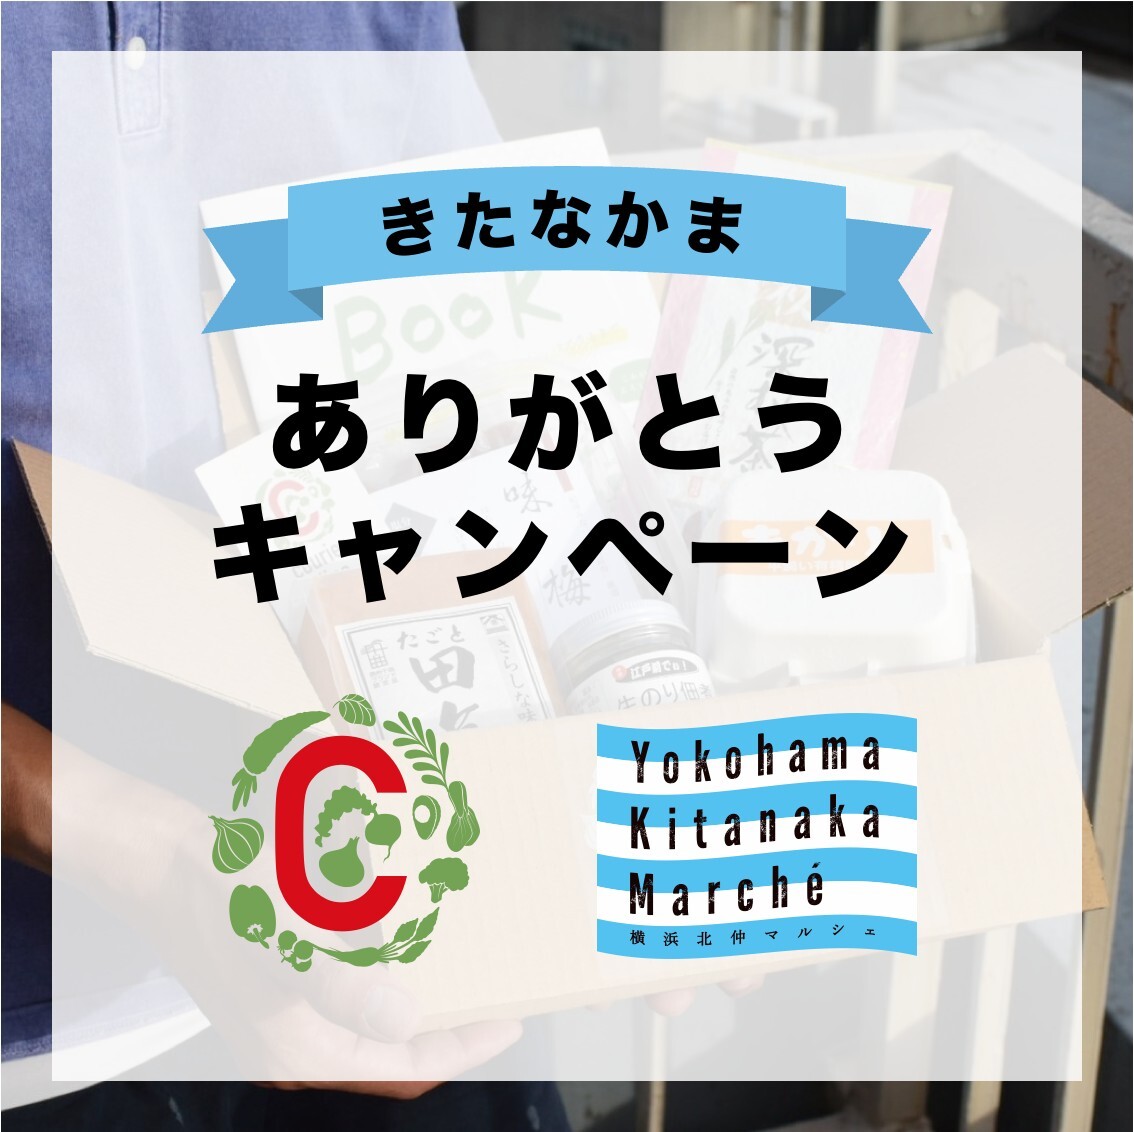 横浜北仲マルシェの商品でギフトを贈ろう！
8周年記念「きたなかまありがとうキャンペーン」として
ECサイトでごはんのお供ギフト、ティータイムギフトの2種を販売